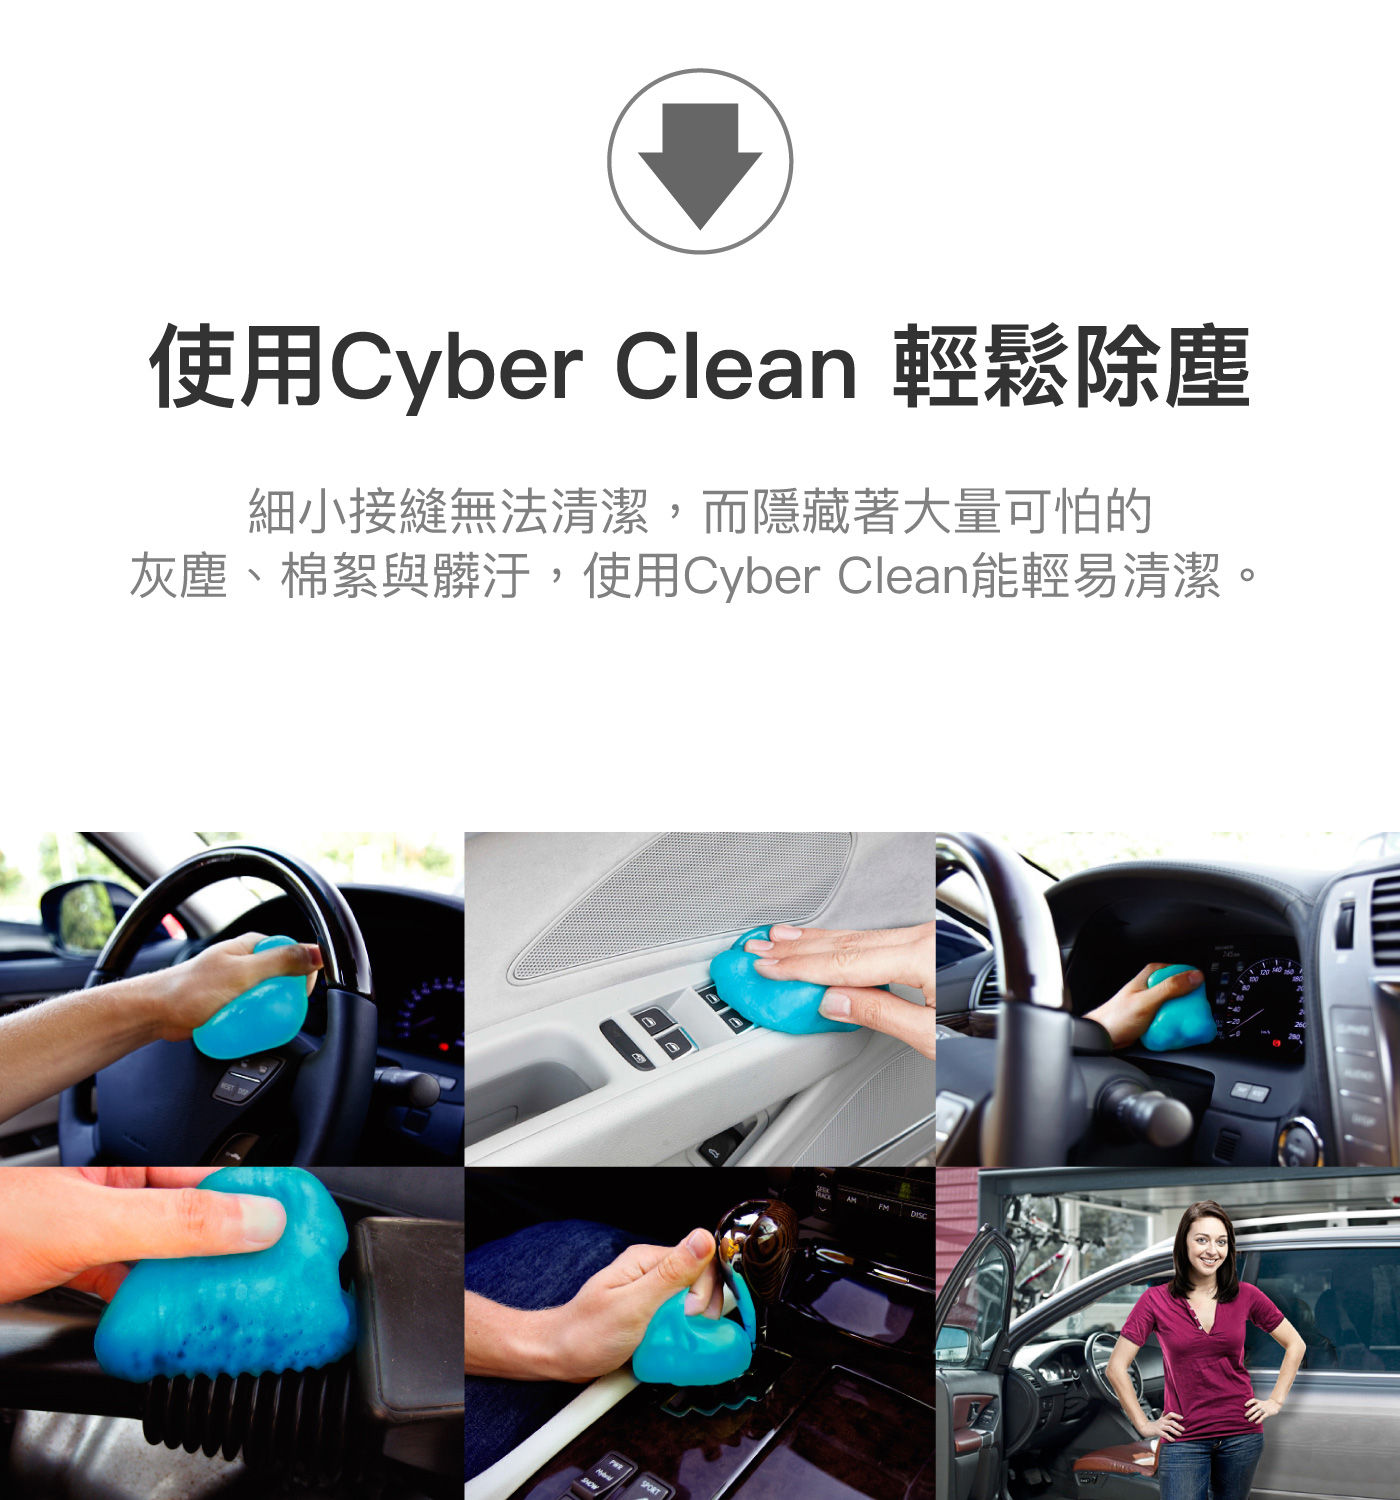 Cyber Clean 車用清潔軟膠160公克，使用Cyber Clean輕鬆除塵，細小接縫也能清潔，灰塵、棉絮、髒汙等